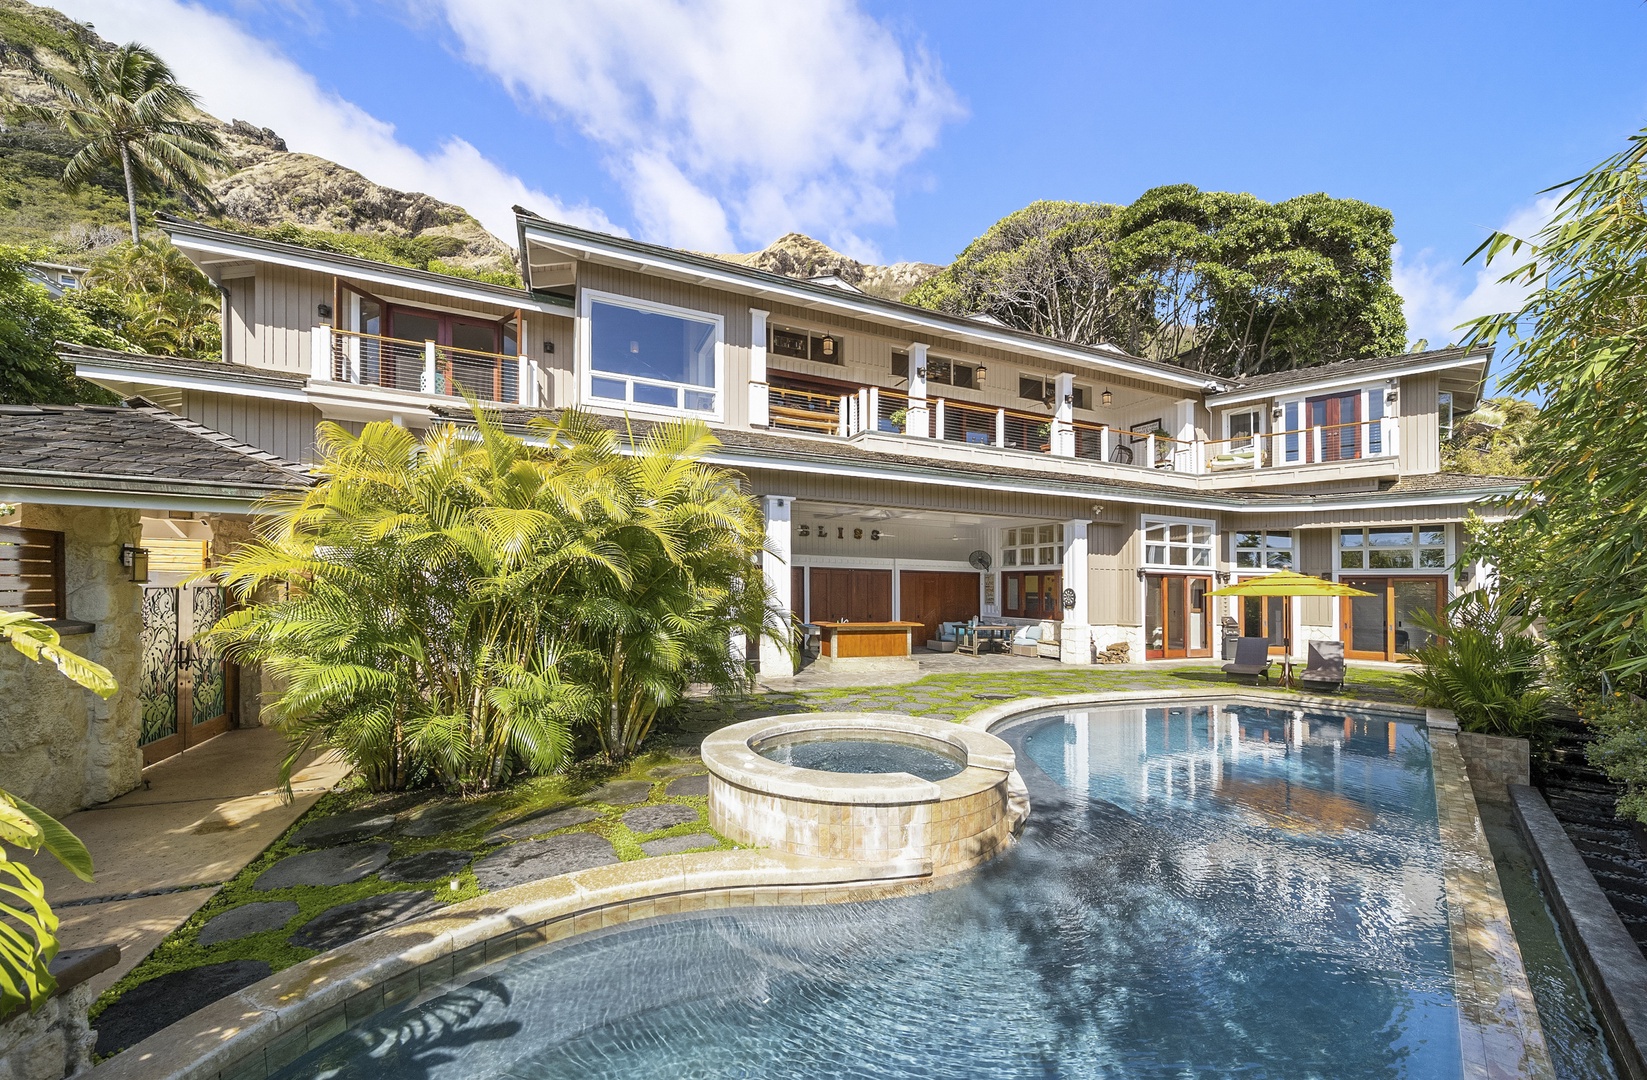 Kailua Vacation Rentals, Lanikai Villa - Lavish, tranquil living at Lanikai Villa with private pool, hot tub, and so much more!